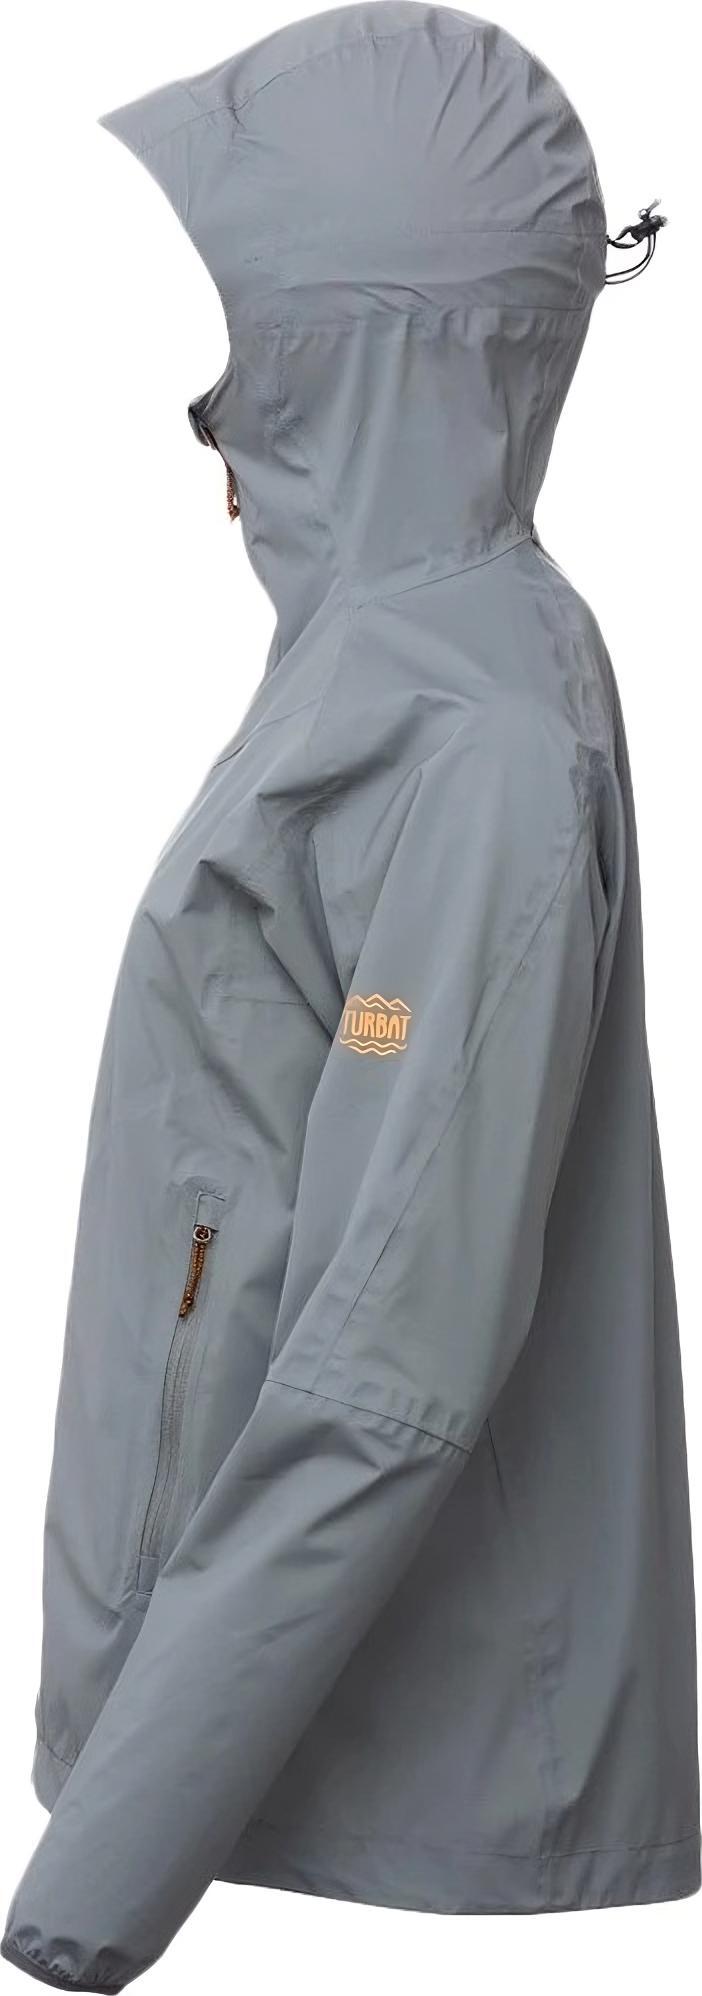 Куртка жіноча Turbat Reva Wmn steel gray S сірийфото4